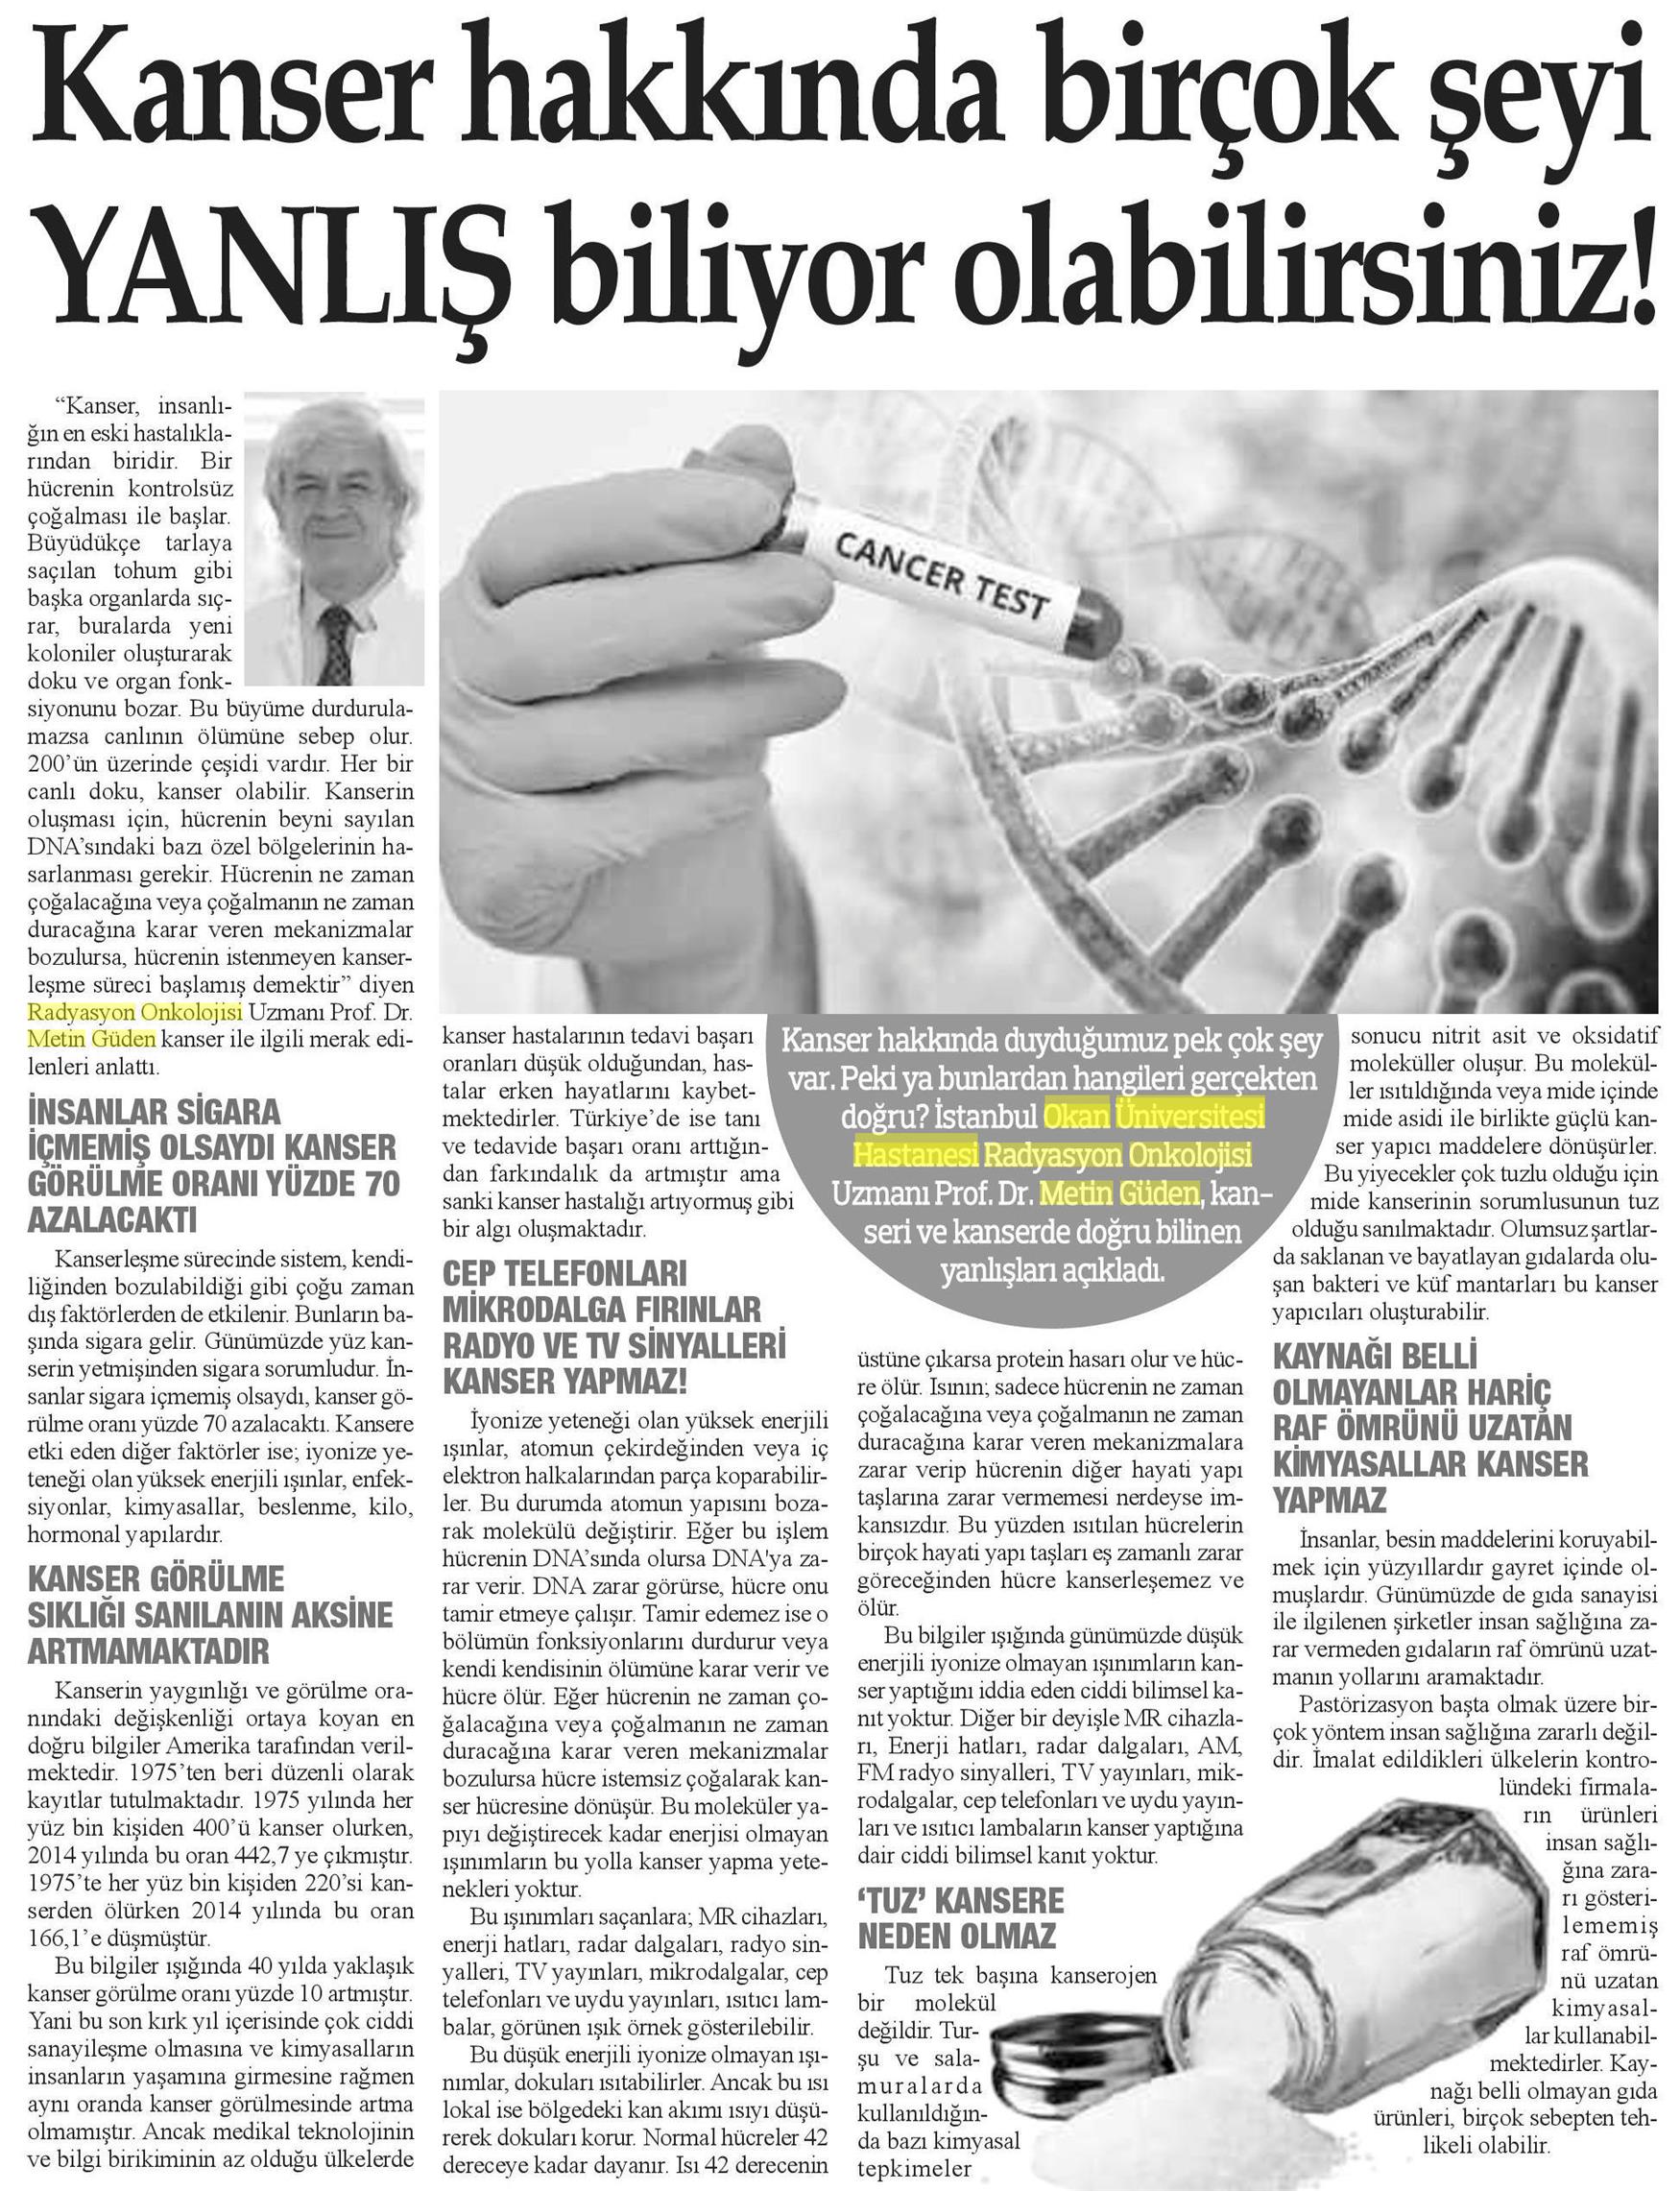 03.02.2019	Bizim Anadolu Gazetesi	KANSER HAKKINDA BİRÇOK ŞEYİ YANLIŞ BİLİYOR OLABİLİRSİNİZ!